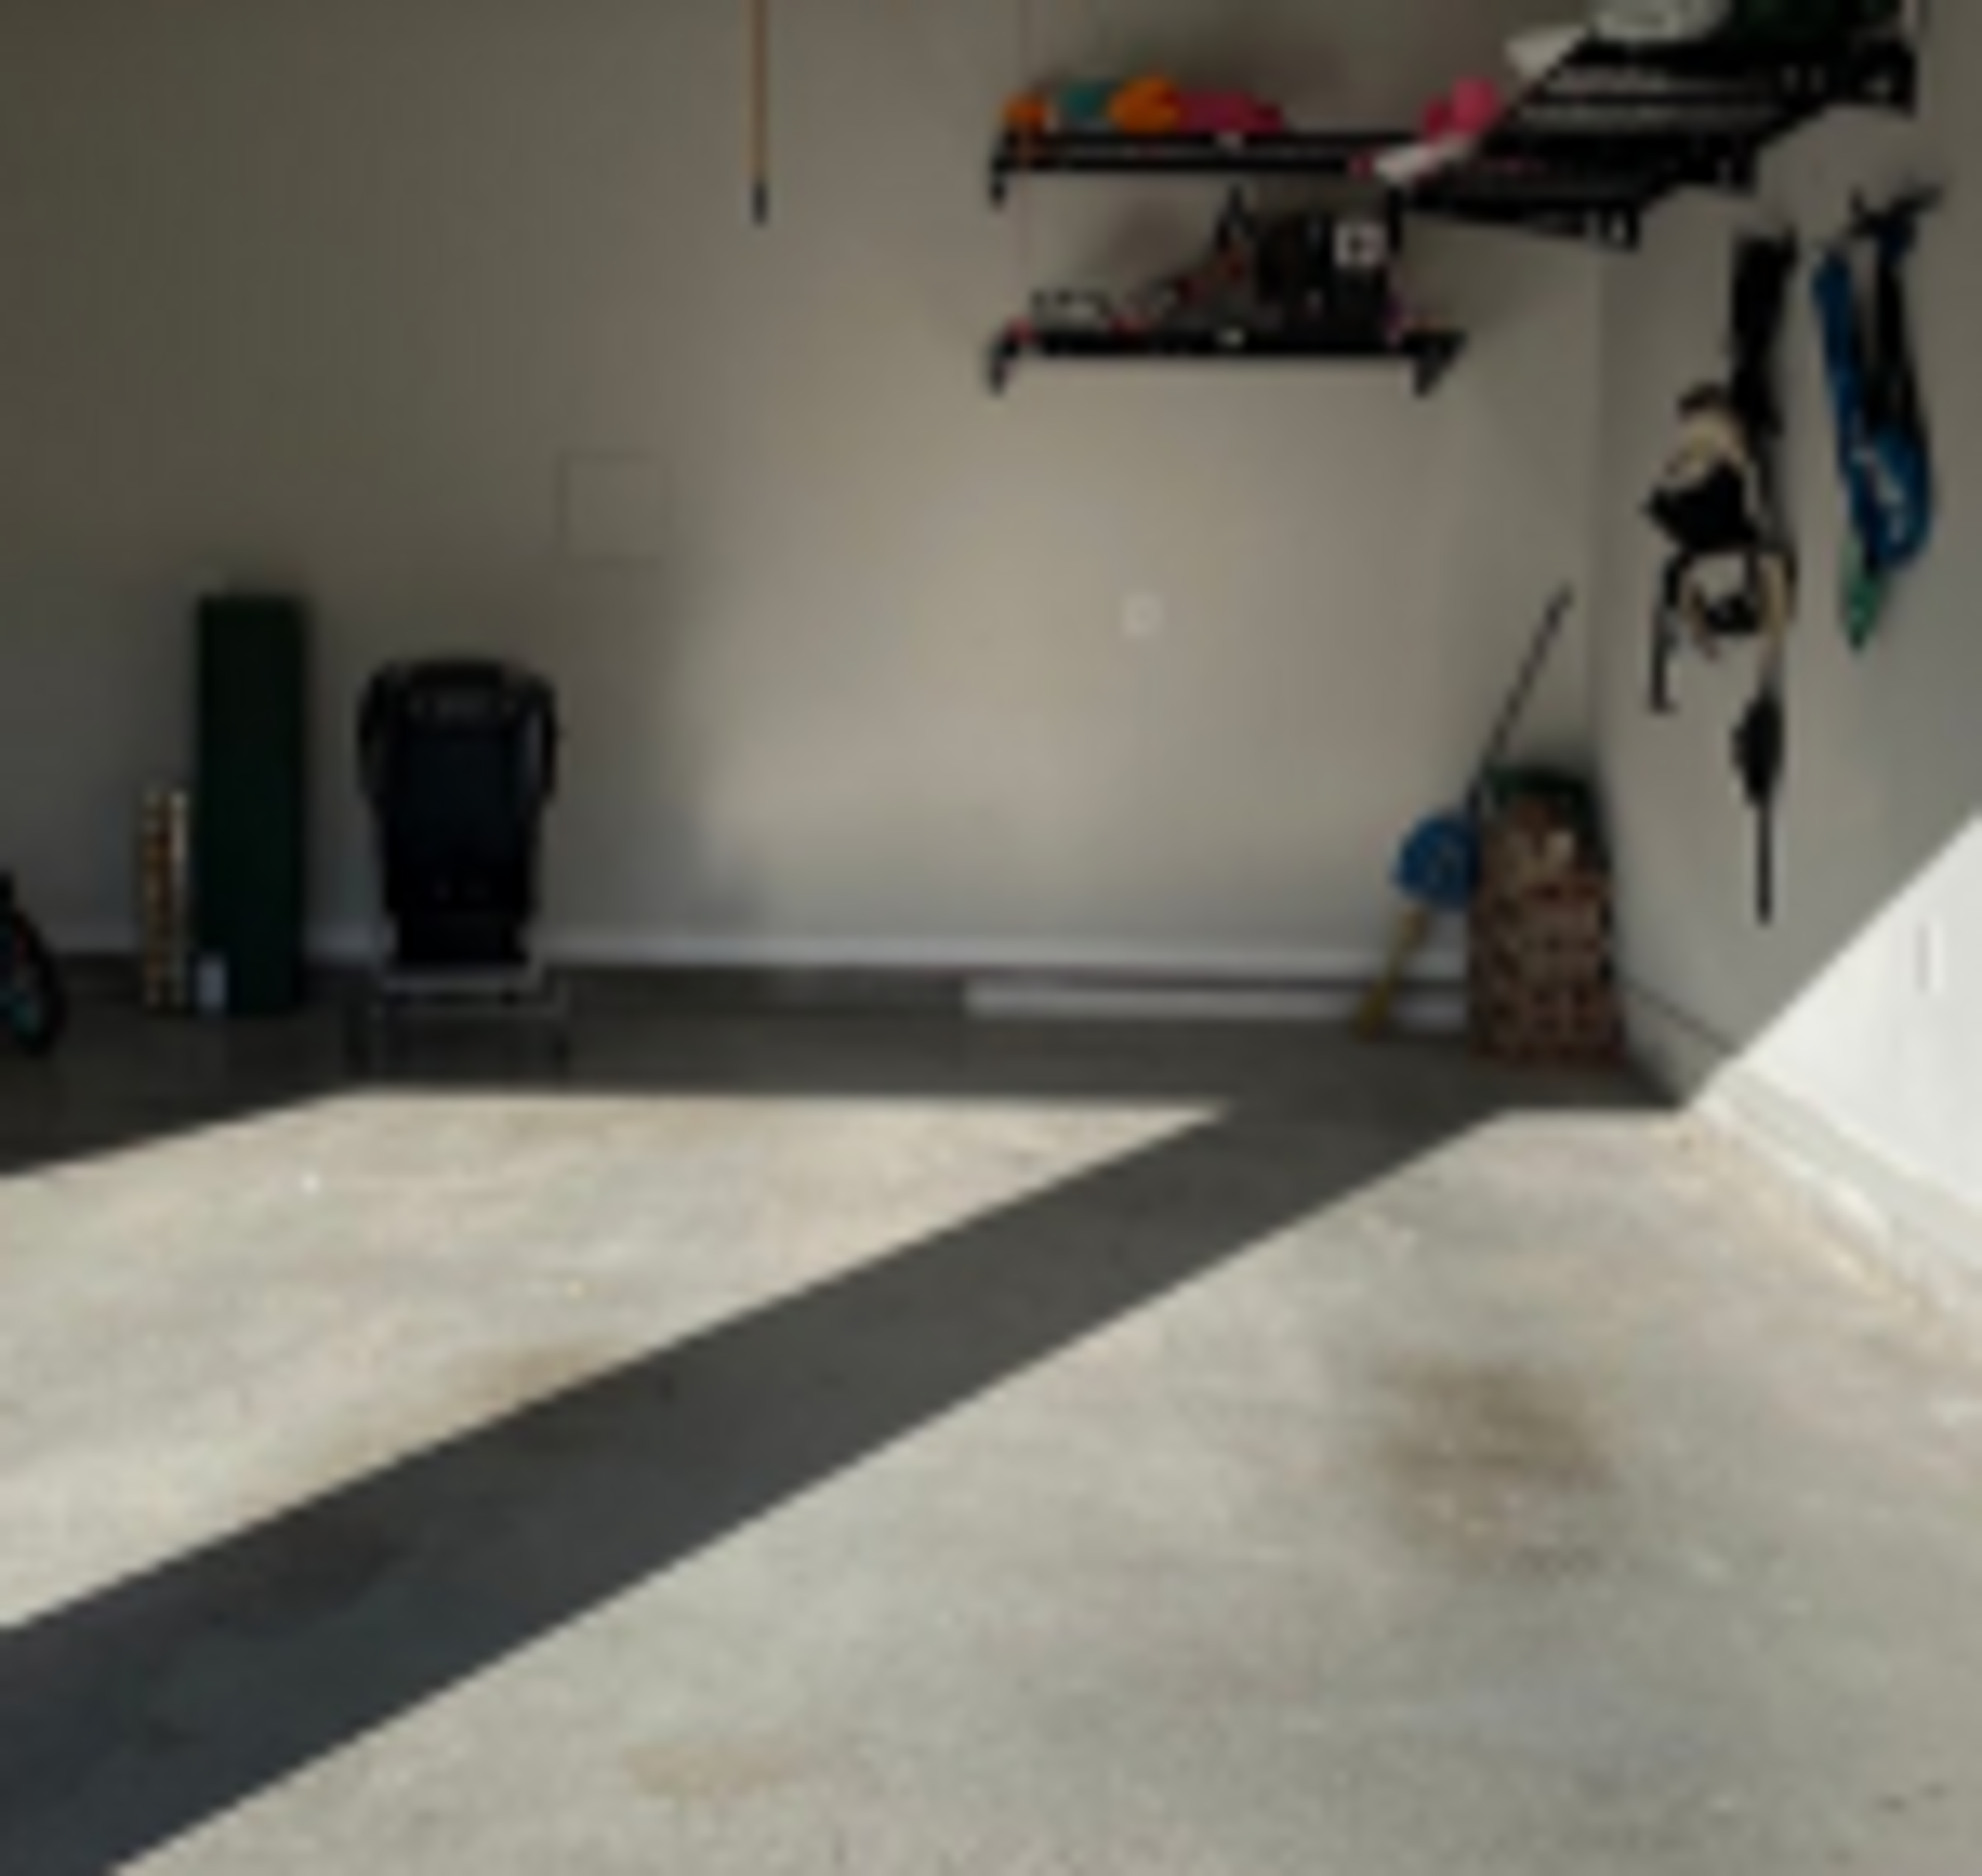 18x10 Garage self storage unit in Frisco, TX